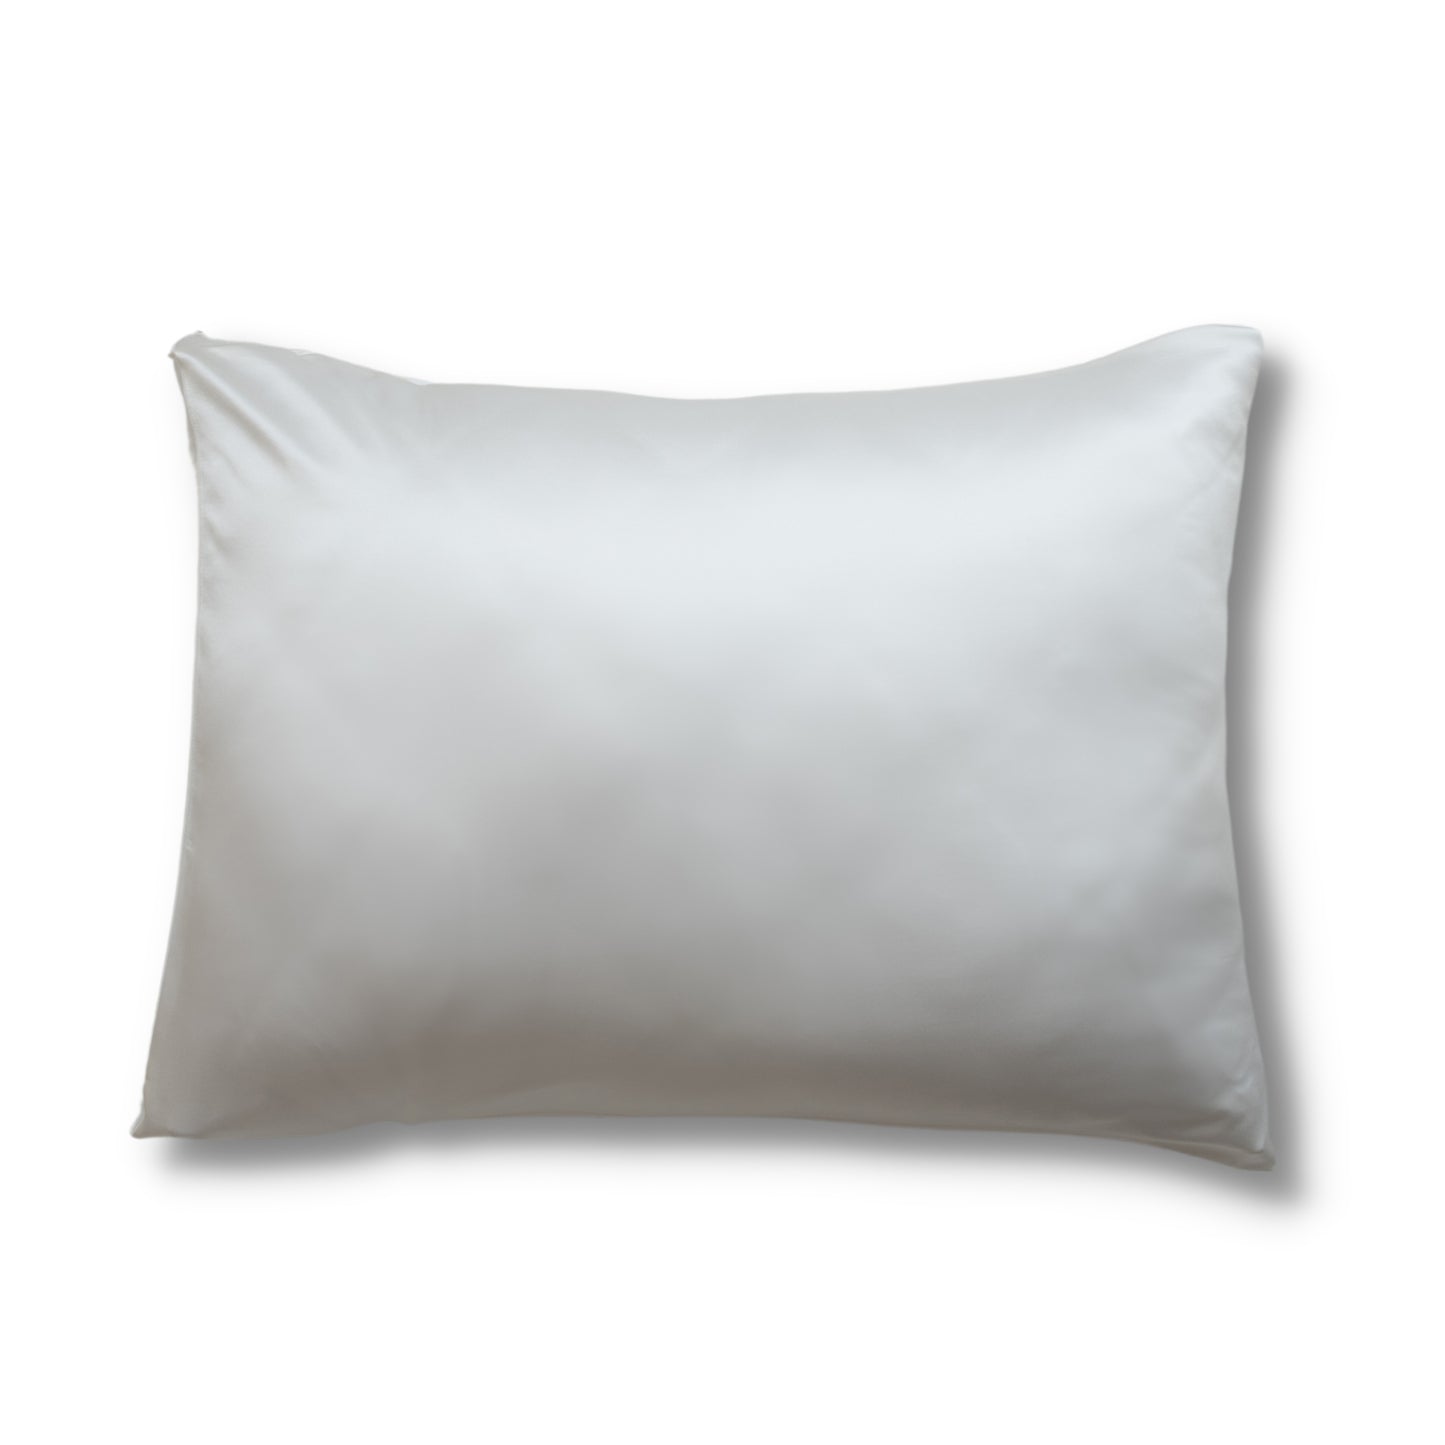 Natūralaus šilko pagalvės užvalkalas 50x70cm - įvairių spalvų